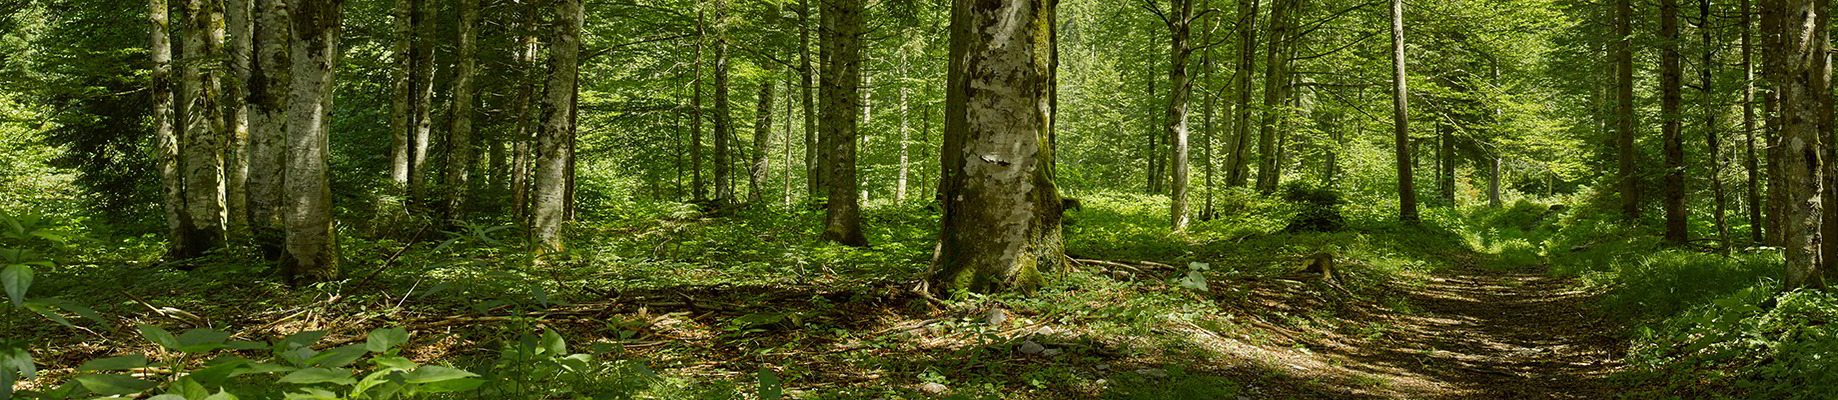 Wald - Grüne Erde legt Wert auf nachhaltig, europäische Forstwirtschaft! Sodass der Nutz-, Schutz- und Erholungswert des Waldes auch für künftige Generationen gewahrt bleibt.